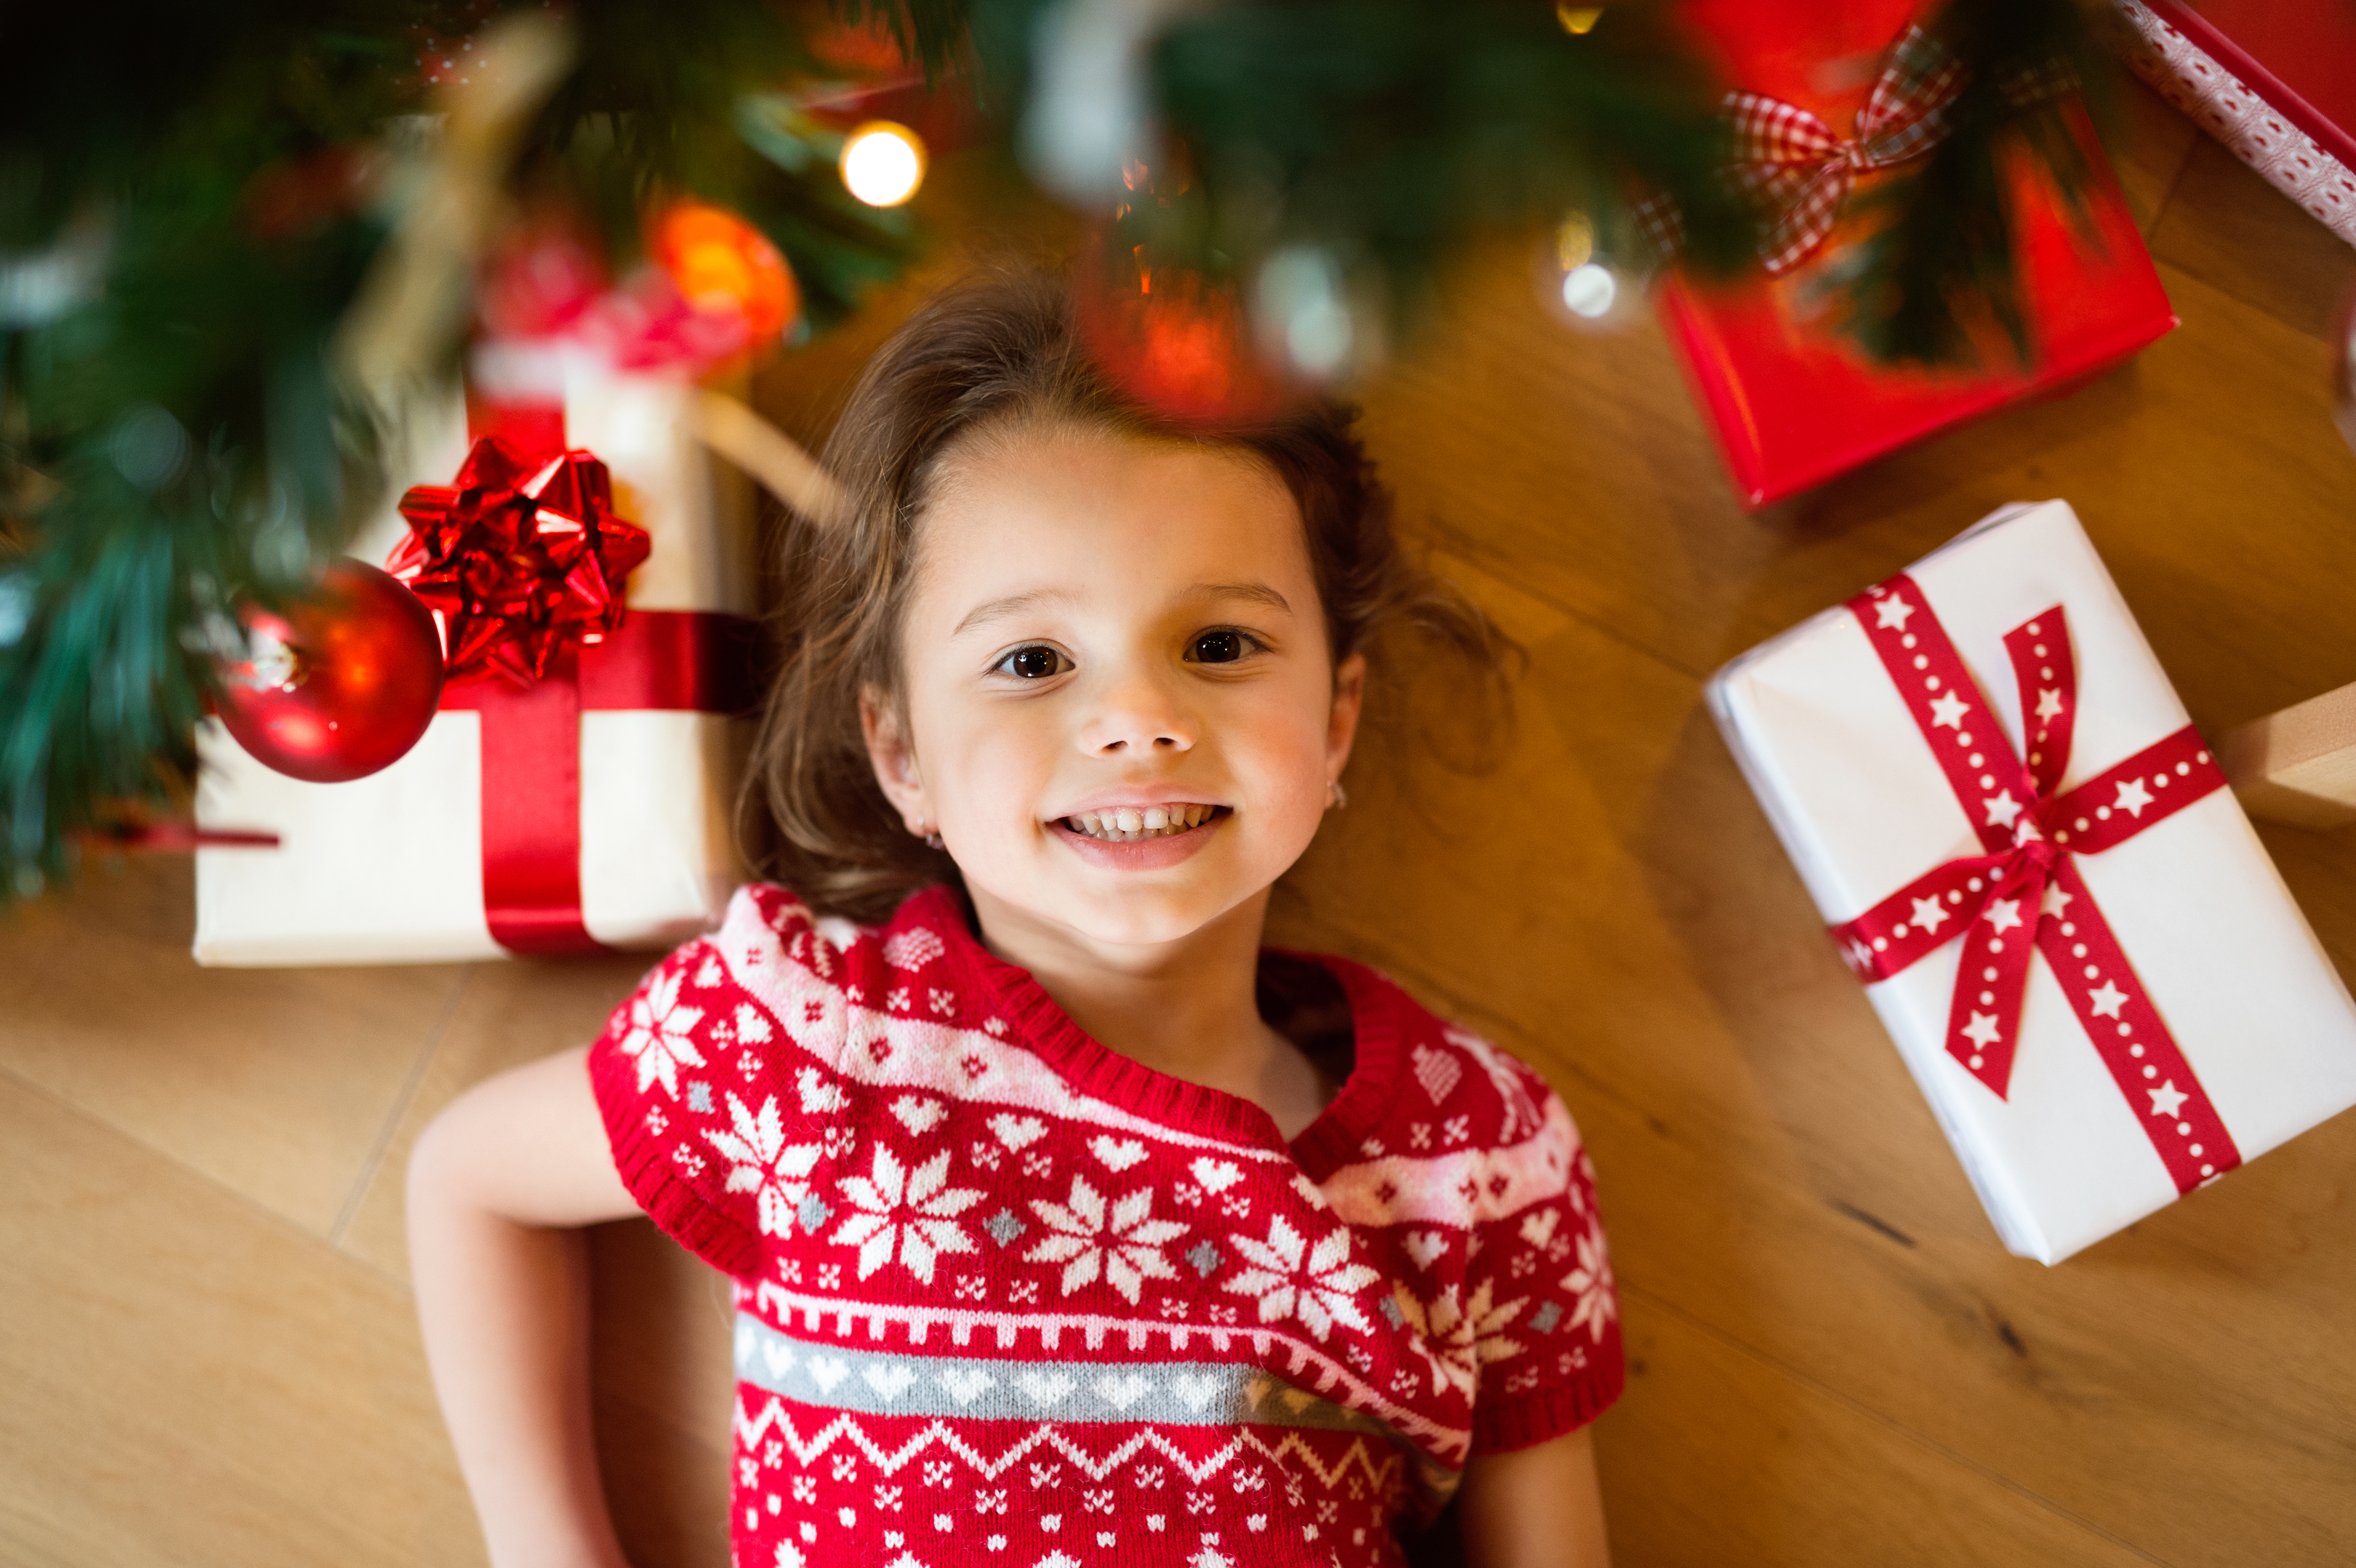 Little girl lying under Christmas tree among presents,